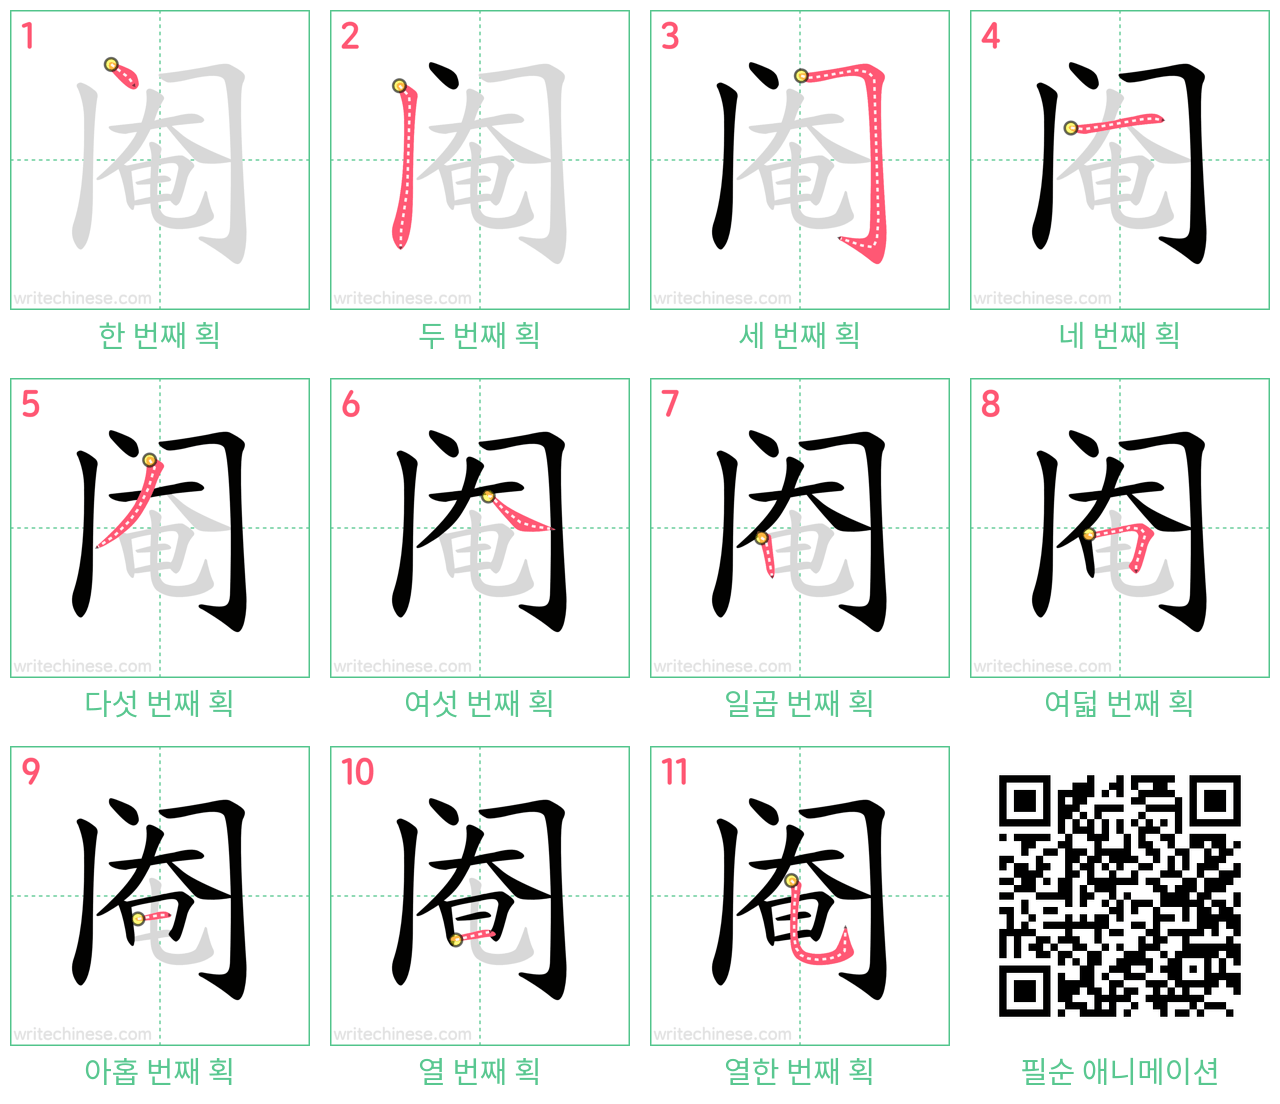 阉 step-by-step stroke order diagrams